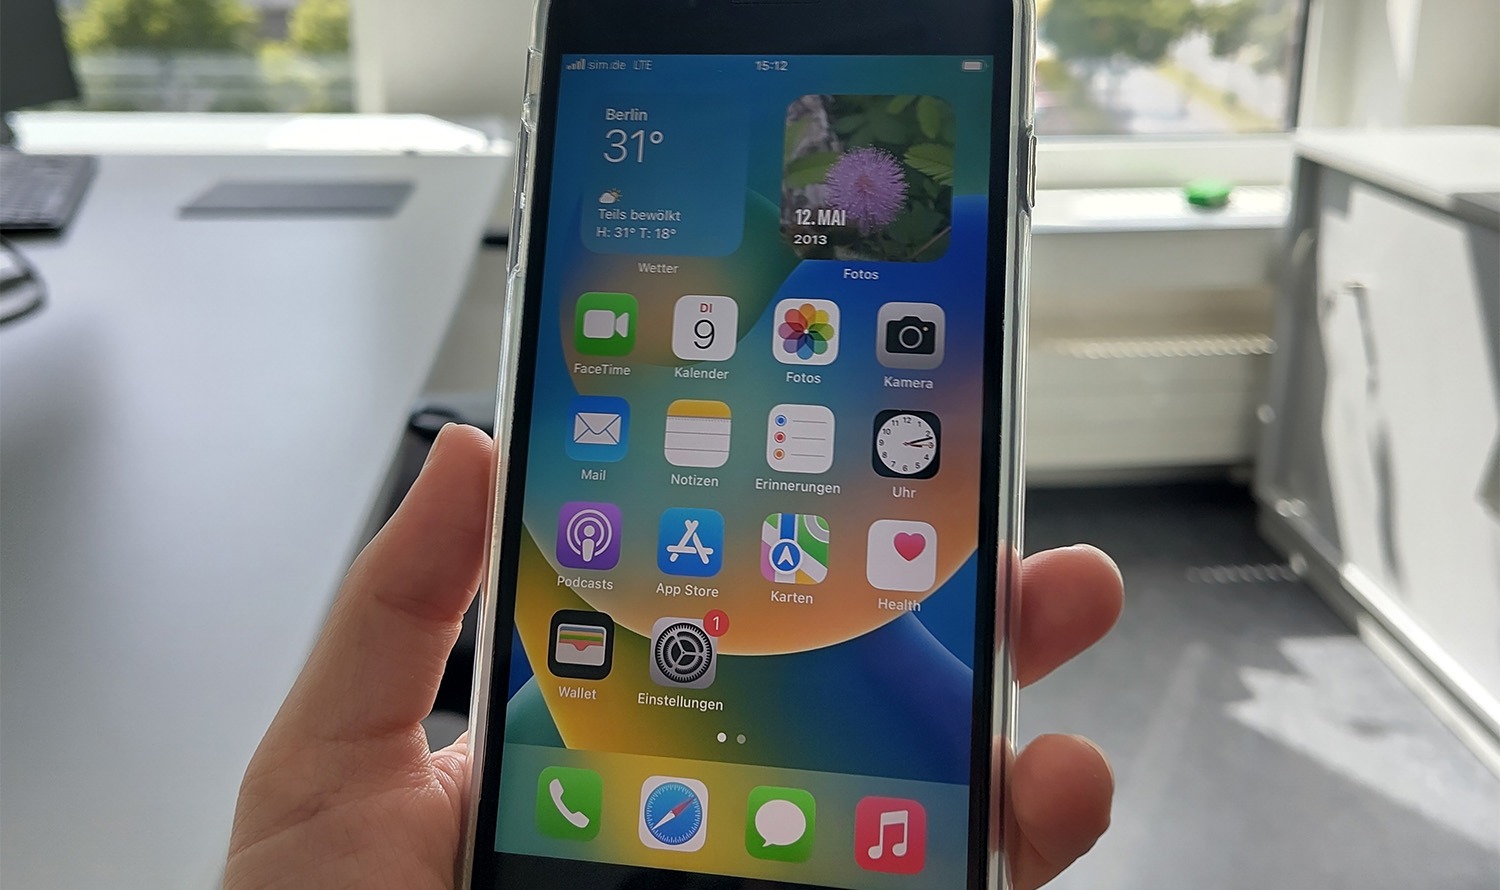 Das Bild zeigt eine Hand, die ein Smartphone hält, auf dessen Bildschirm verschiedene Apps zu sehen sind.